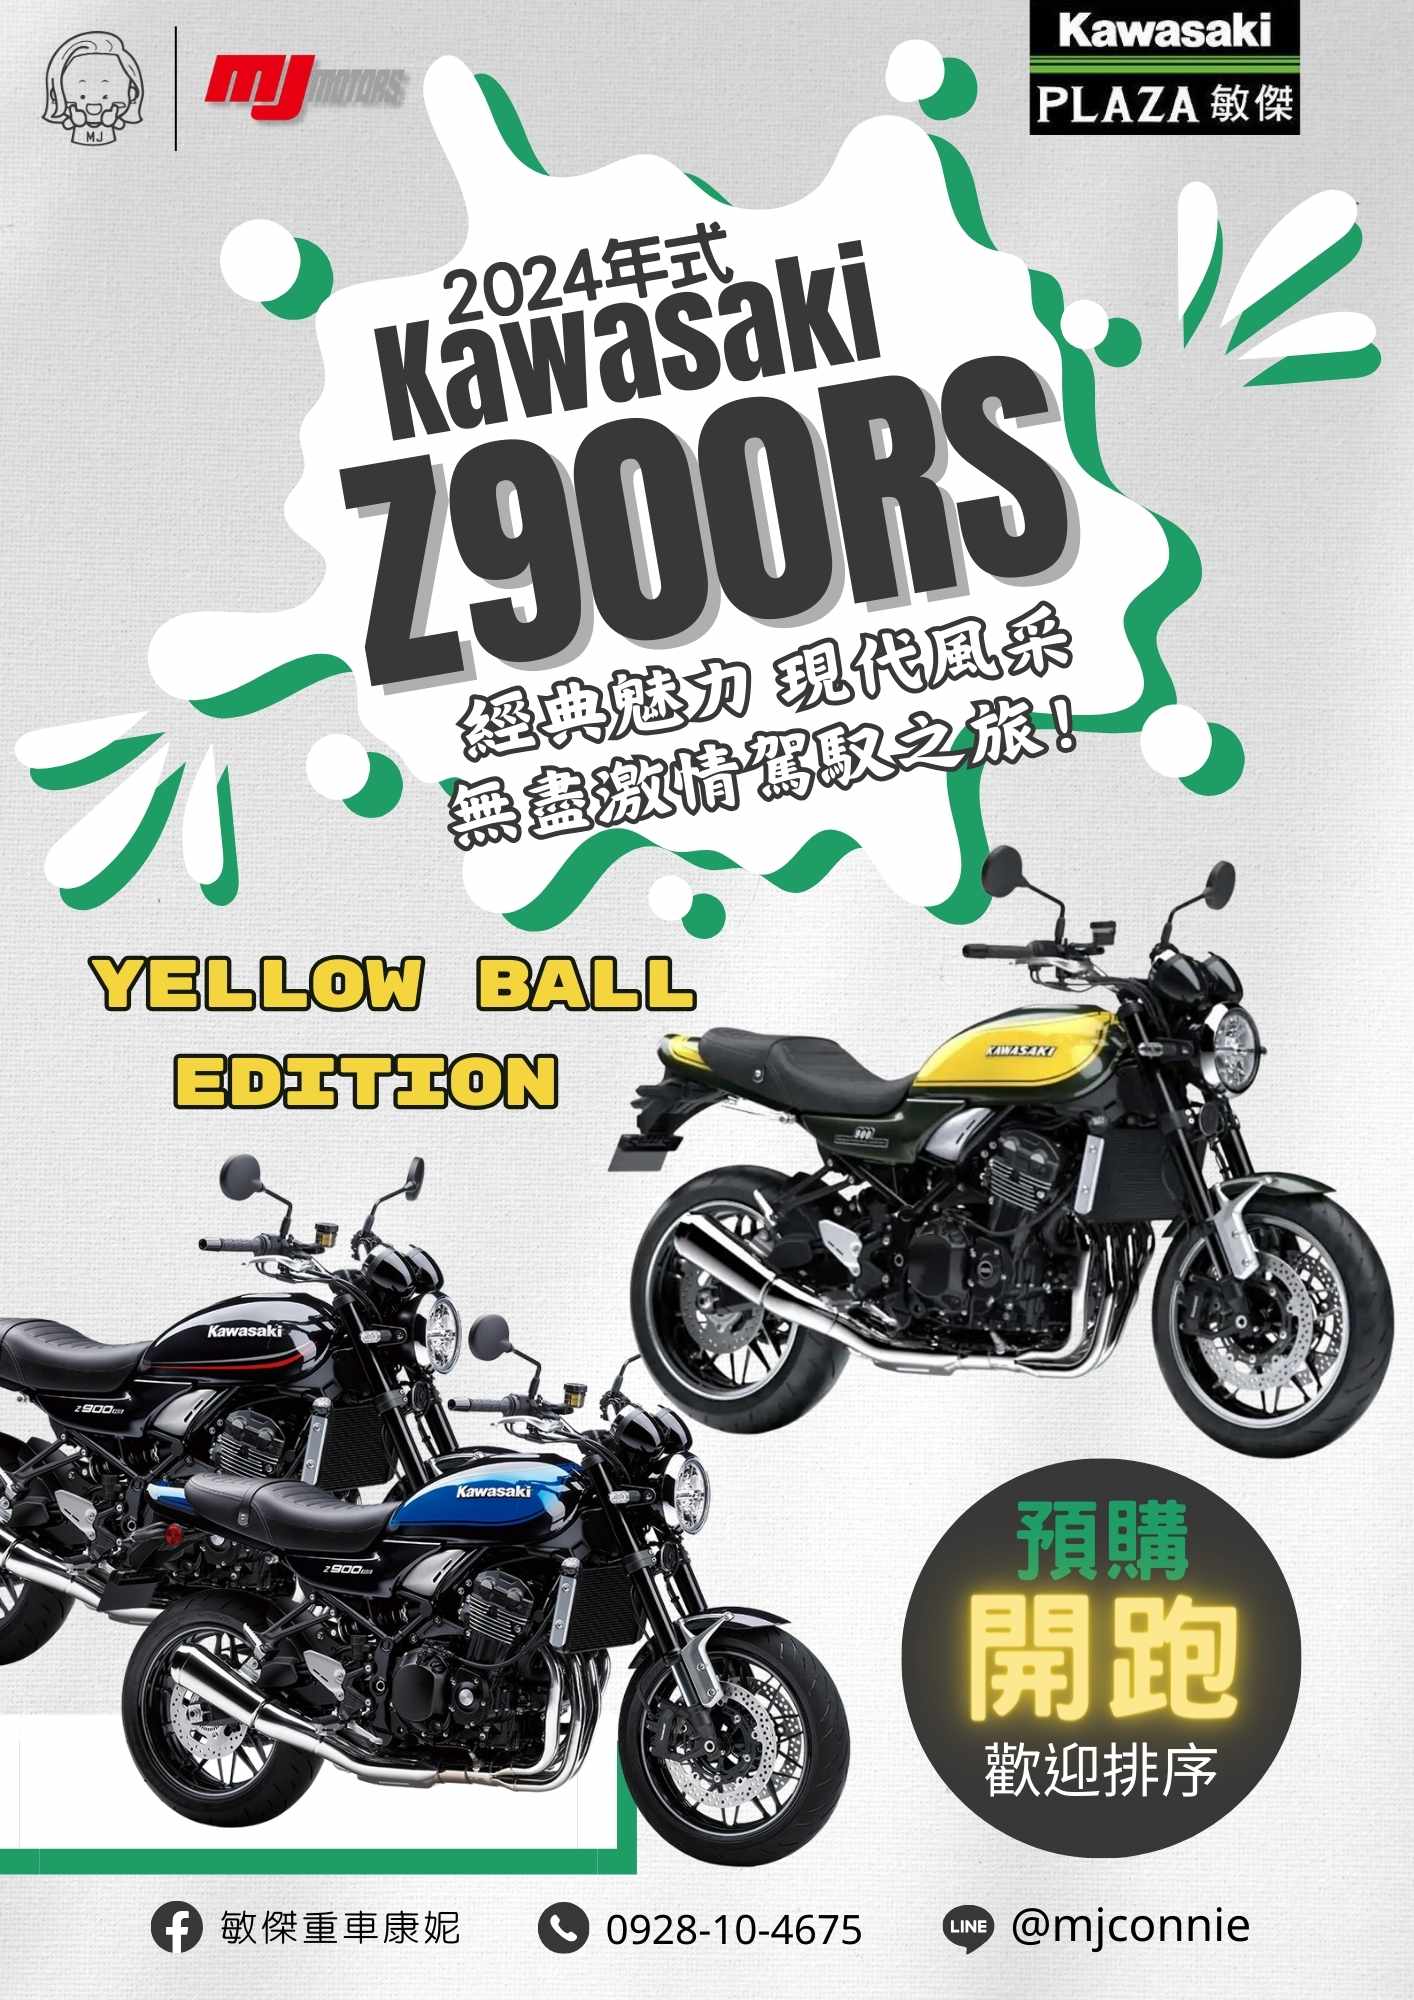 【敏傑車業資深銷售專員 康妮 Connie】KAWASAKI Z900RS - 「Webike-摩托車市」 『敏傑康妮』KAWASAKI Z900RS 2024配色 全新三色 任您挑選 現在馬上跟康妮排序卡位!!